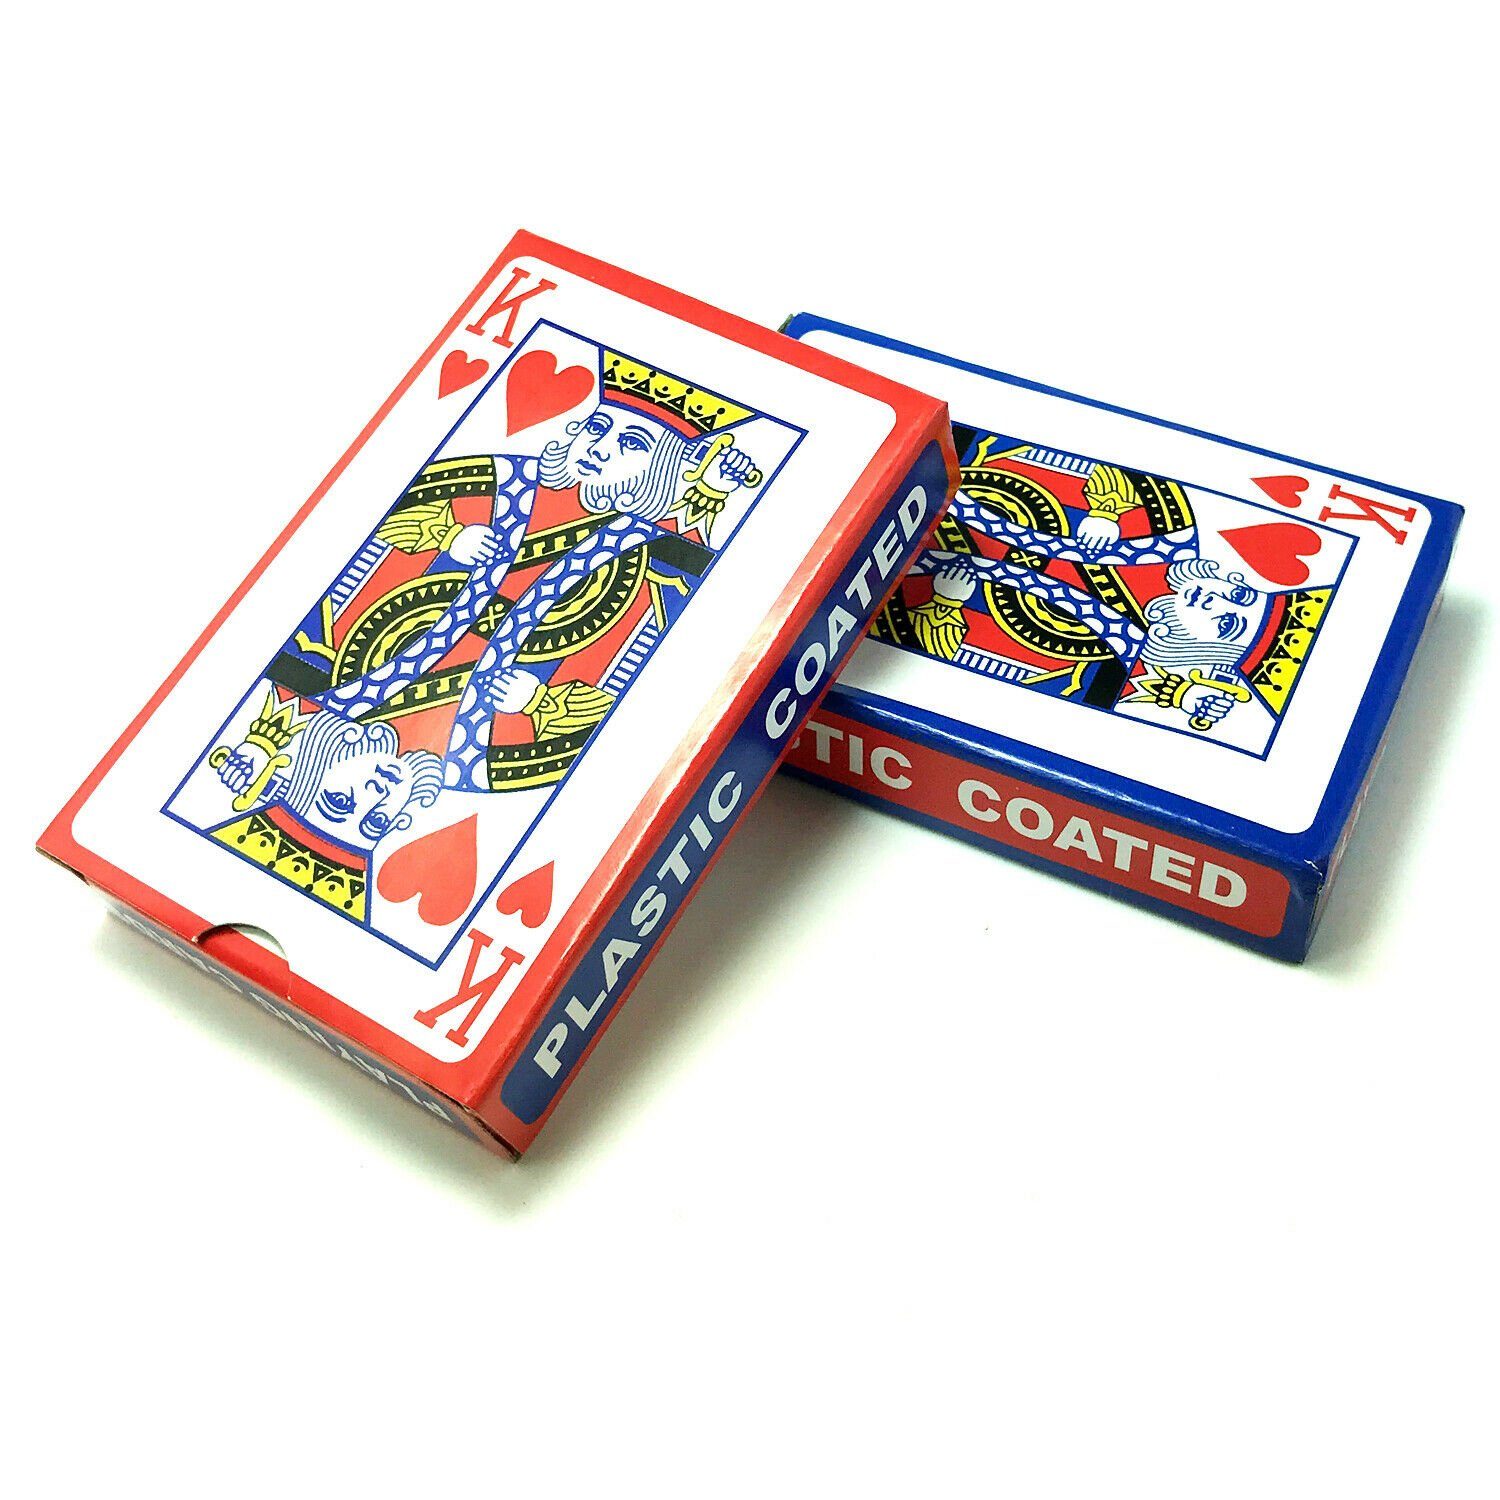 TSB Werk Spielesammlung, 2x 54 Blatt Spielkarten Set (Rot & Blau) Kartenspiel, Poker, Canasta, Bridge, Skat